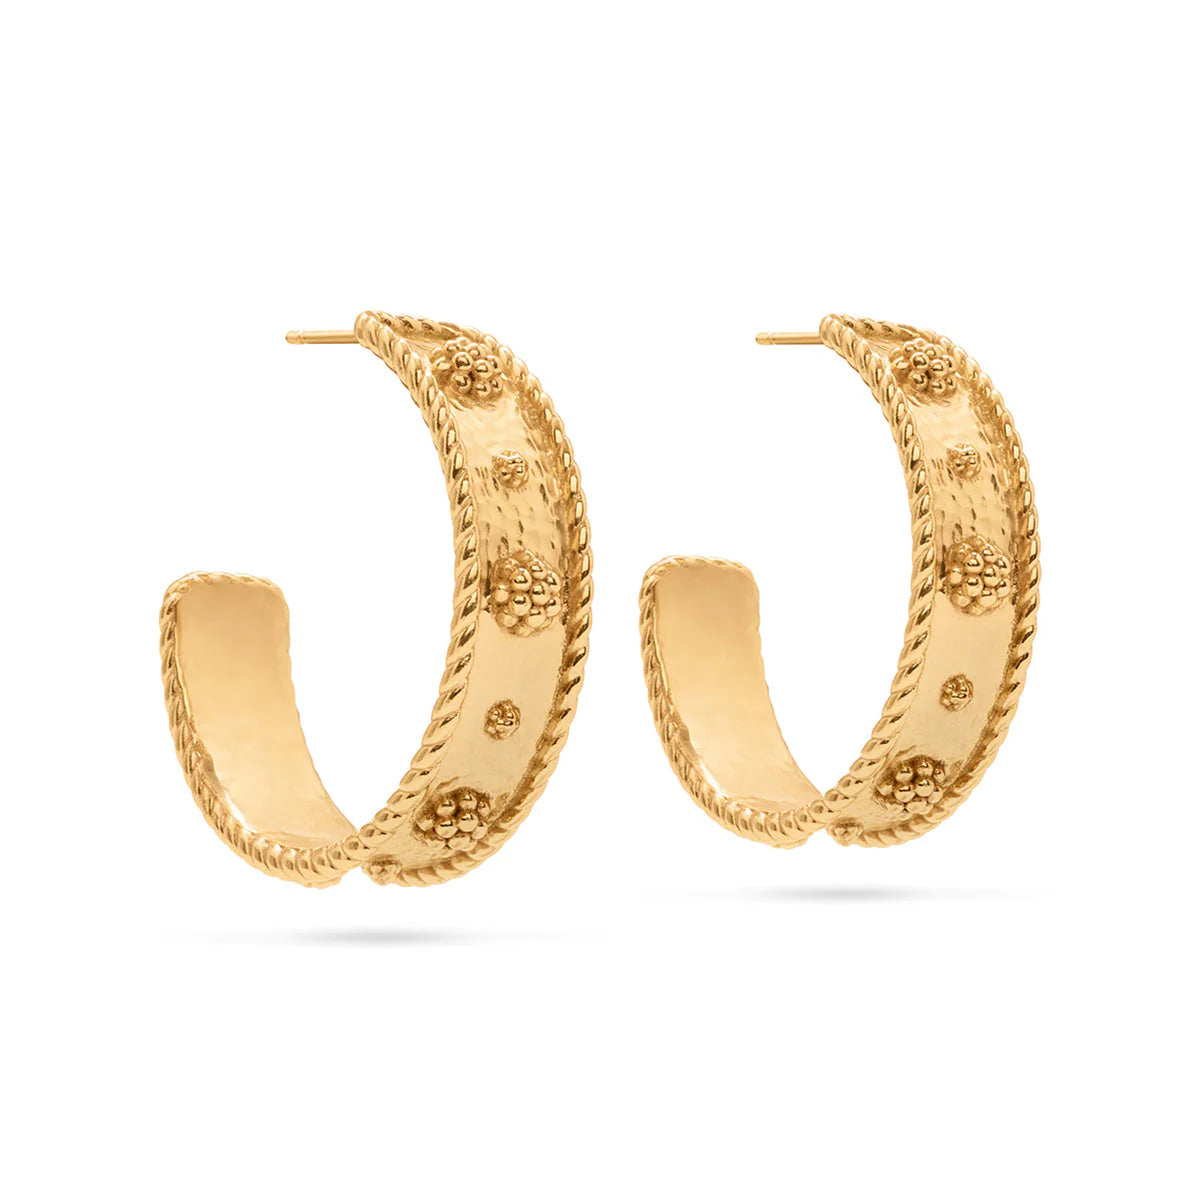 Berry Hoop Earrings - in Hammered Gold